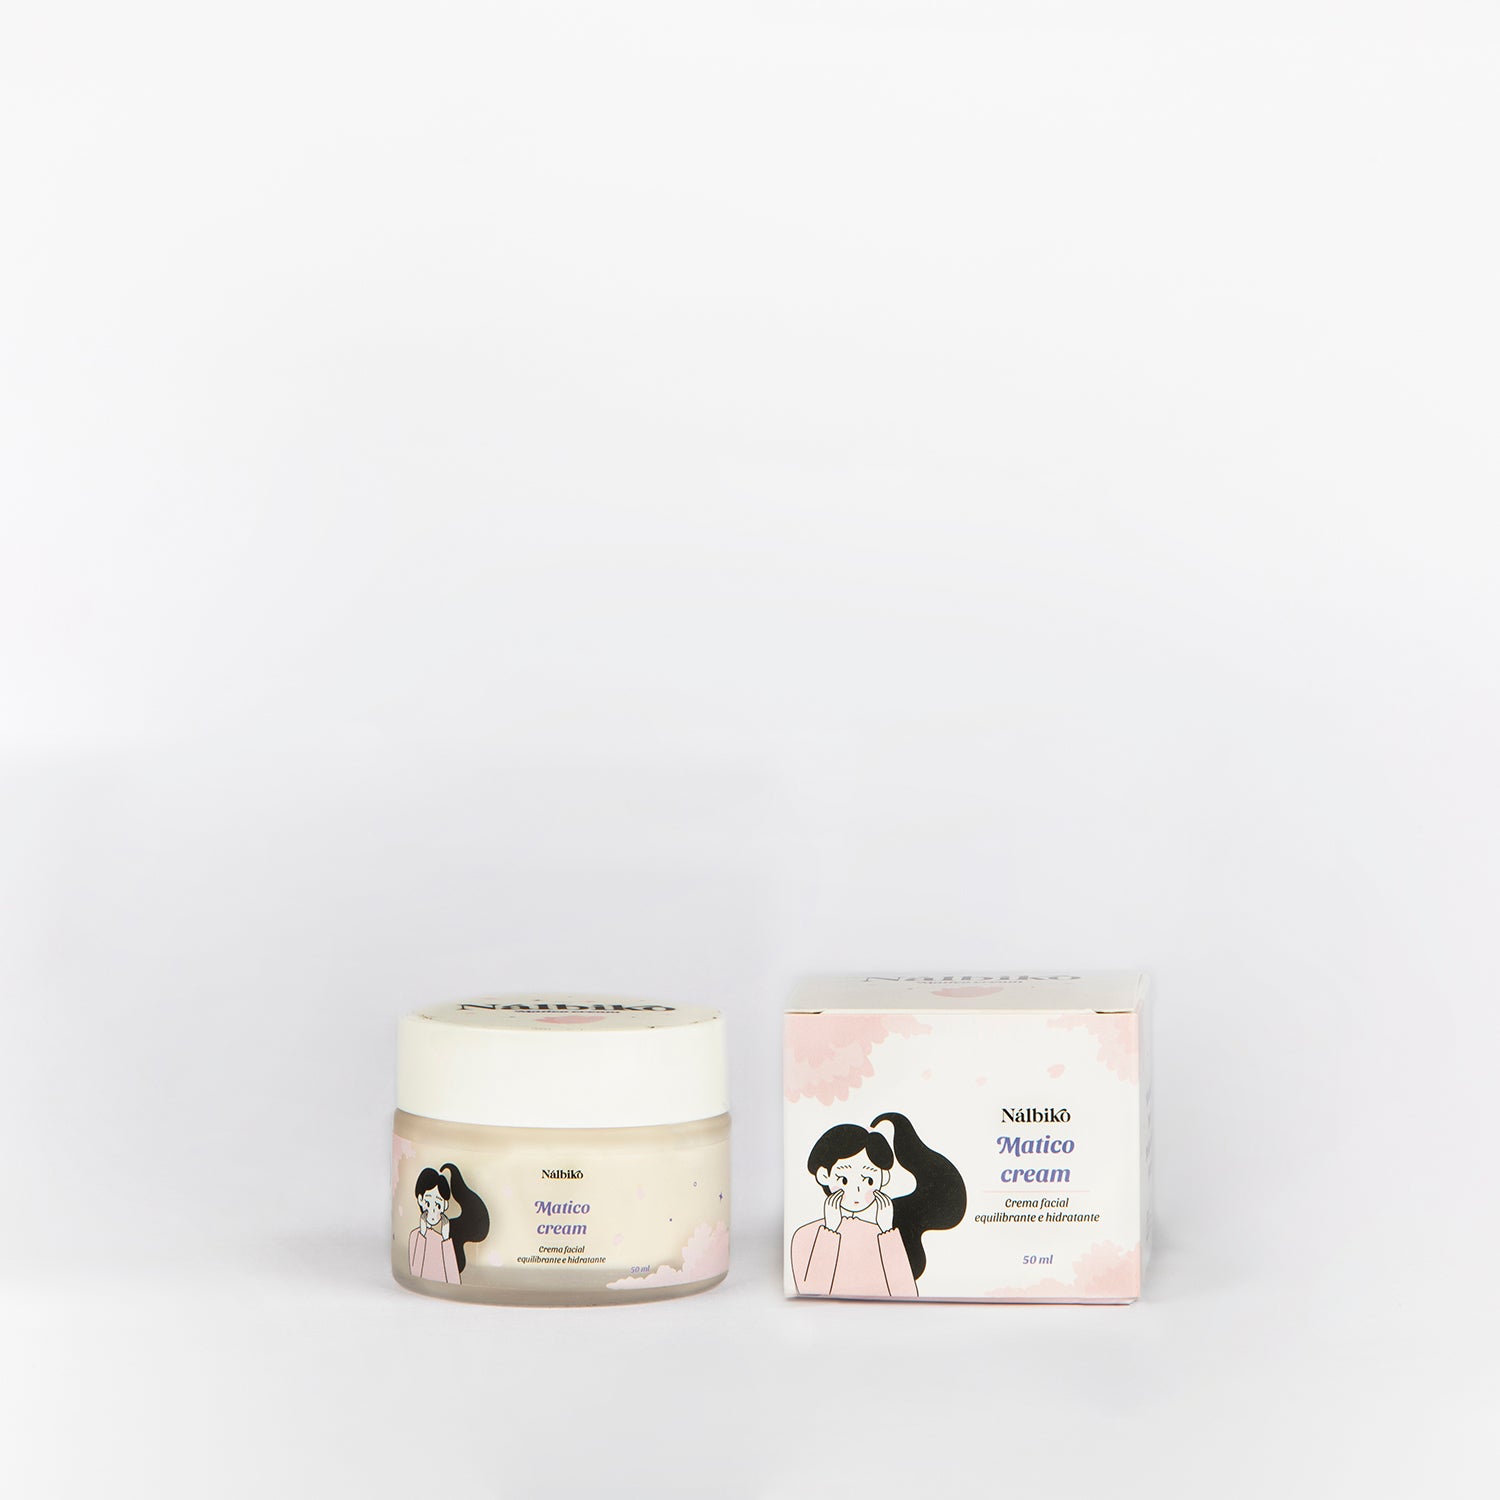 Matico Cream - Crema facial equilibrante e hidratante